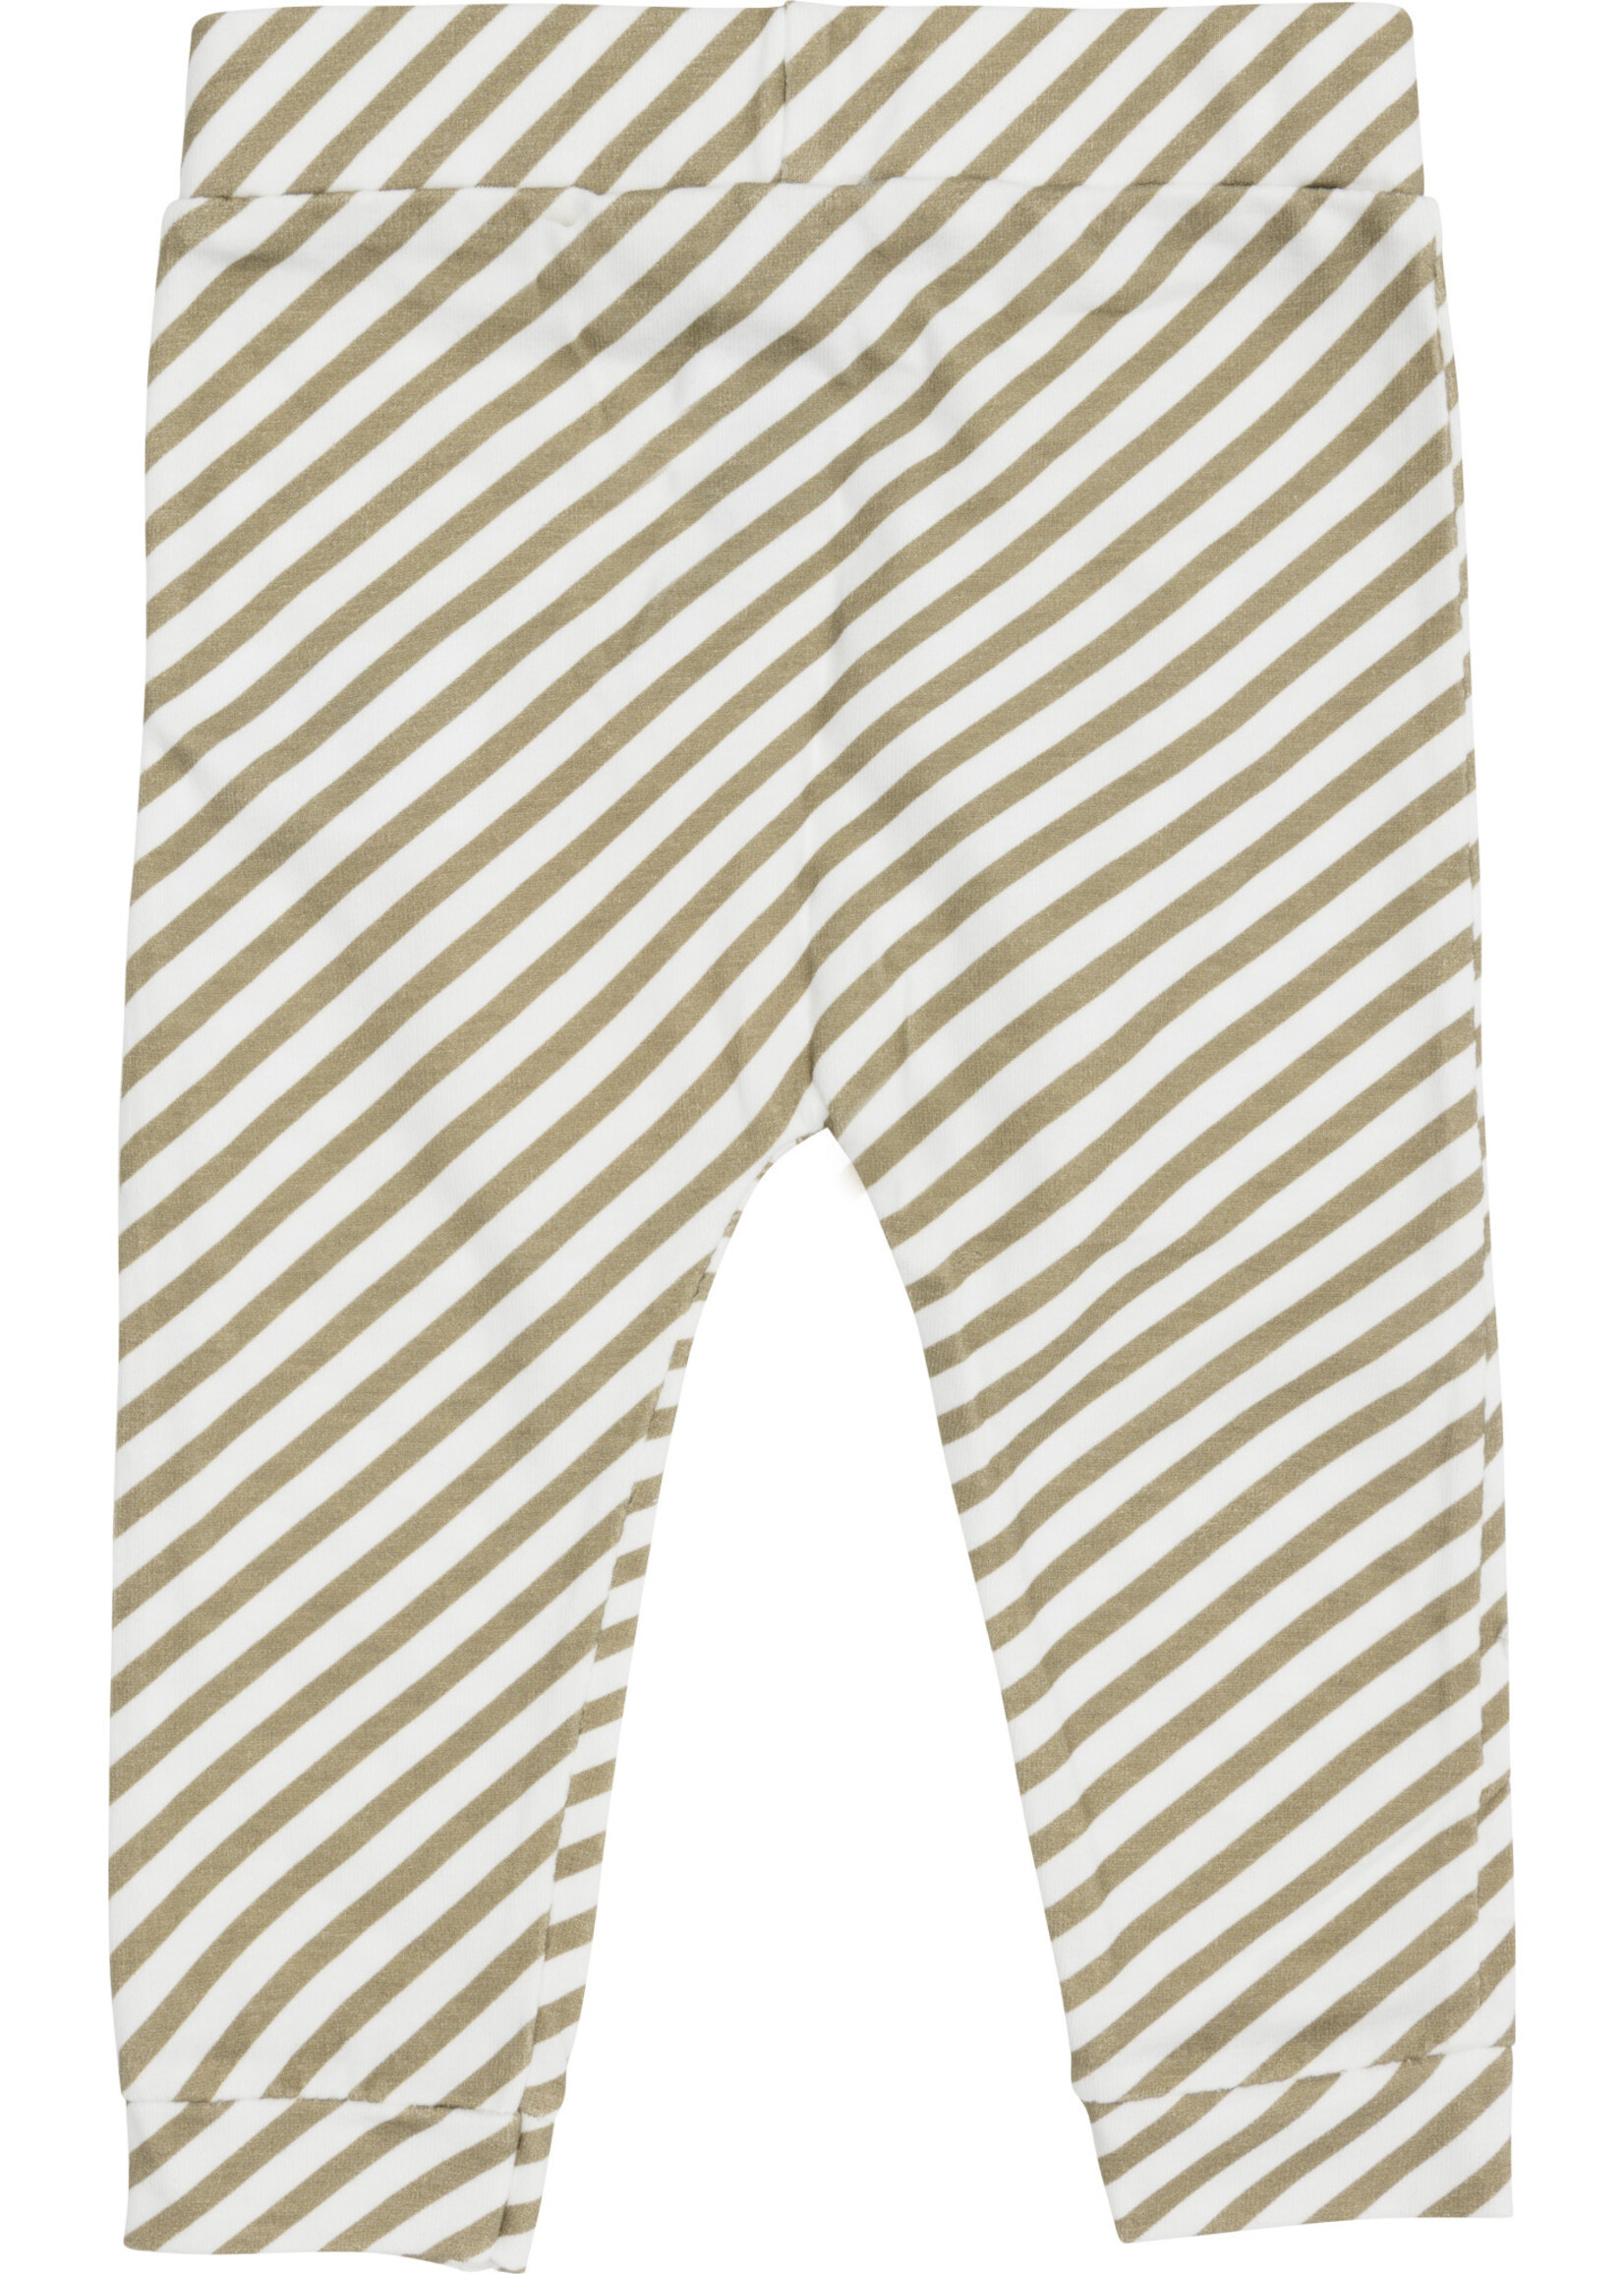 Klein Klein - trouser stripe off white / twill